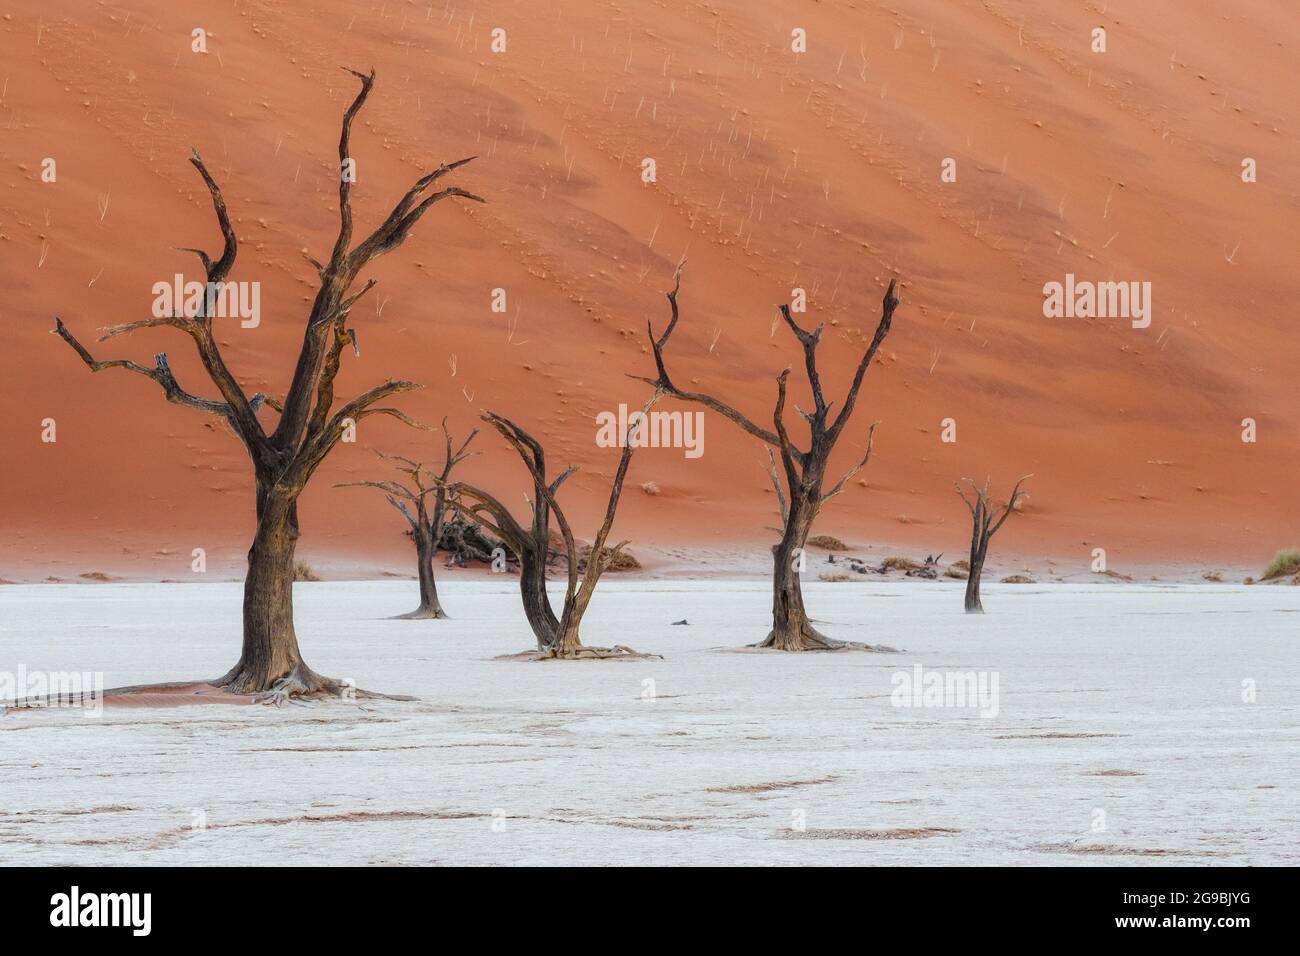 Des arbres camelthorn morts contre des dunes de sable imposantes au lever du soleil à Deadvlei, parc national Namib-Naukluft, Namibie, Afrique. Banque D'Images